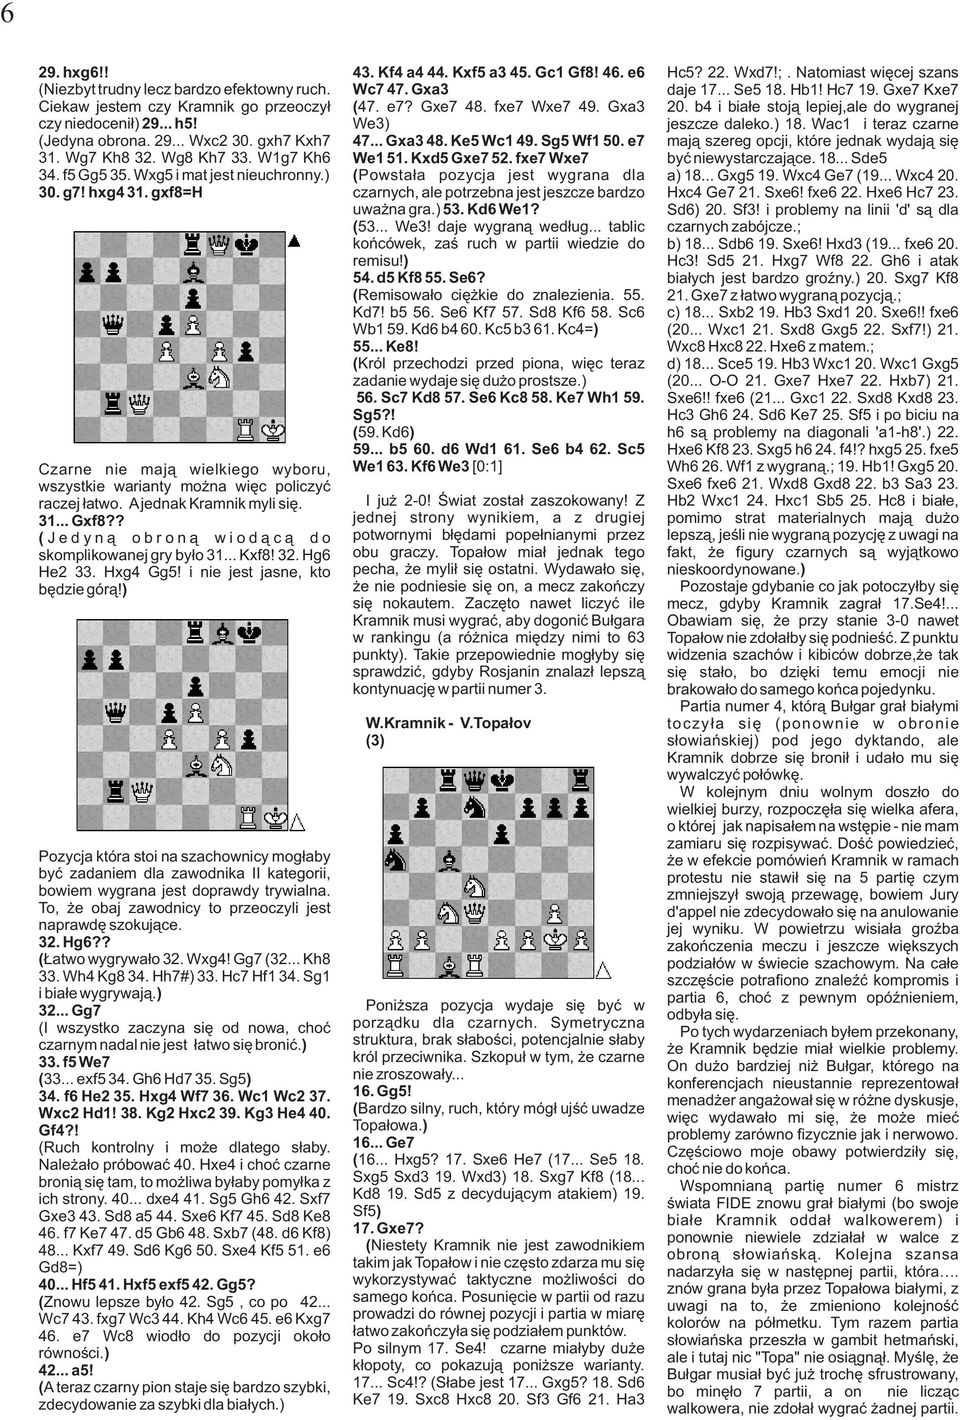 ? ( Jedyną obroną wiodącą do skomplikowanej gry było 31... Kxf8! 32. Hg6 He2 33. Hxg4 Gg5! i nie jest jasne, kto będzie górą!